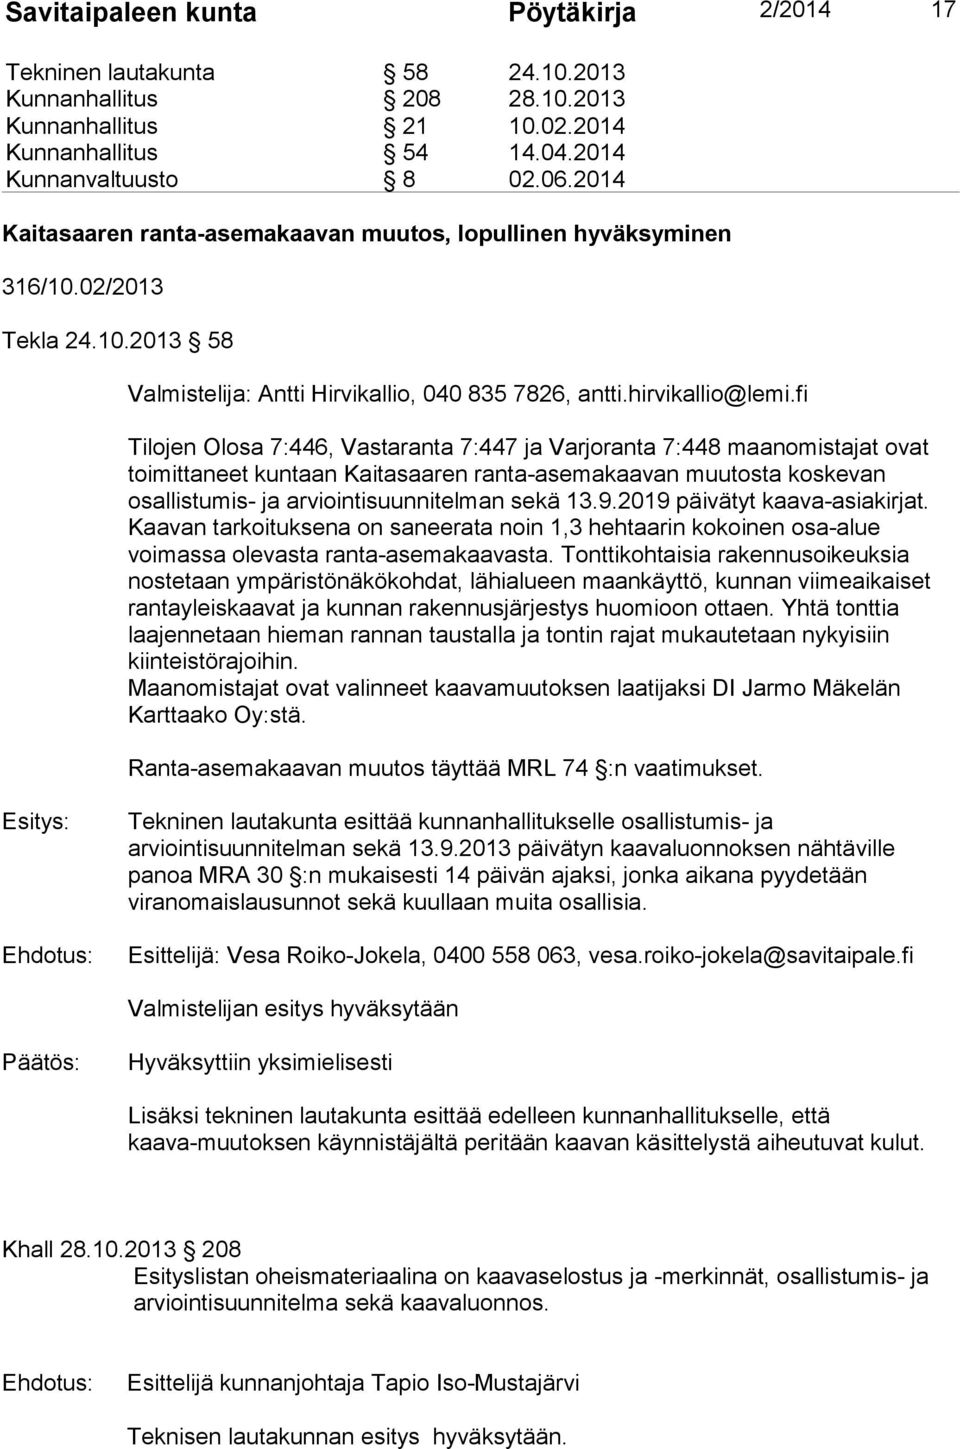 fi Tilojen Olosa 7:446, Vastaranta 7:447 ja Varjoranta 7:448 maanomistajat ovat toimittaneet kuntaan Kaitasaaren ranta-asemakaavan muutosta koskevan osallistumis- ja arviointisuunnitelman sekä 13.9.